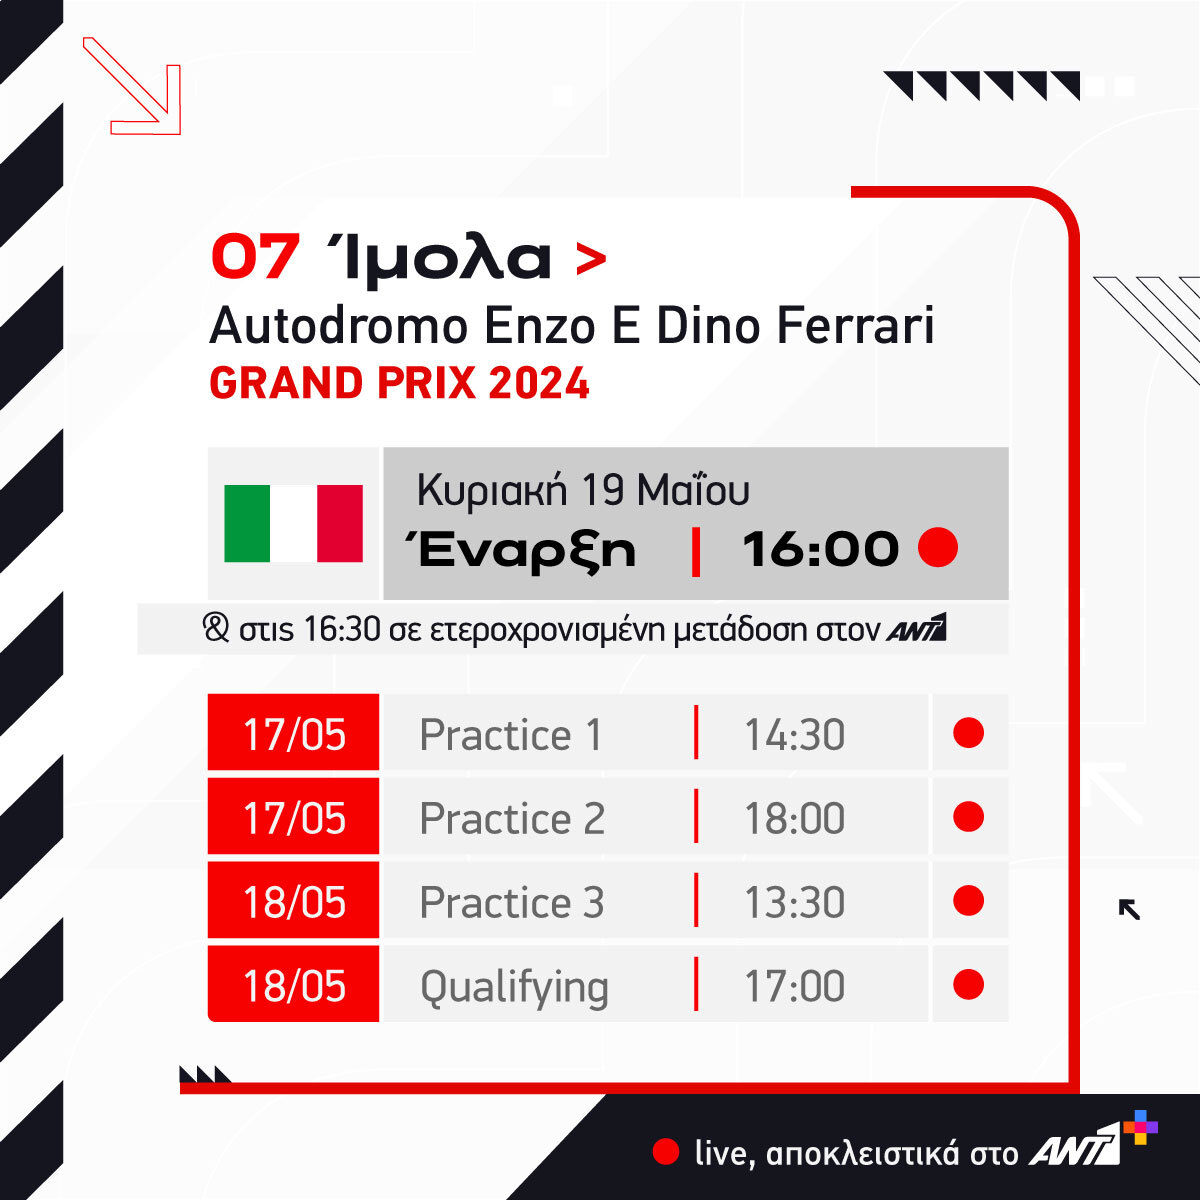 Ο πρώτος ευρωπαϊκός σταθμός της Formula 1 για φέτος είναι στην εμβληματική πίστα της Ίμολα.🇮🇹

👉 Όλα τα νέα της F1 στο antenna.gr/f1

#f1ant1 #Formula1 #ant1plus #ant1tv #F1 #ImolaGP